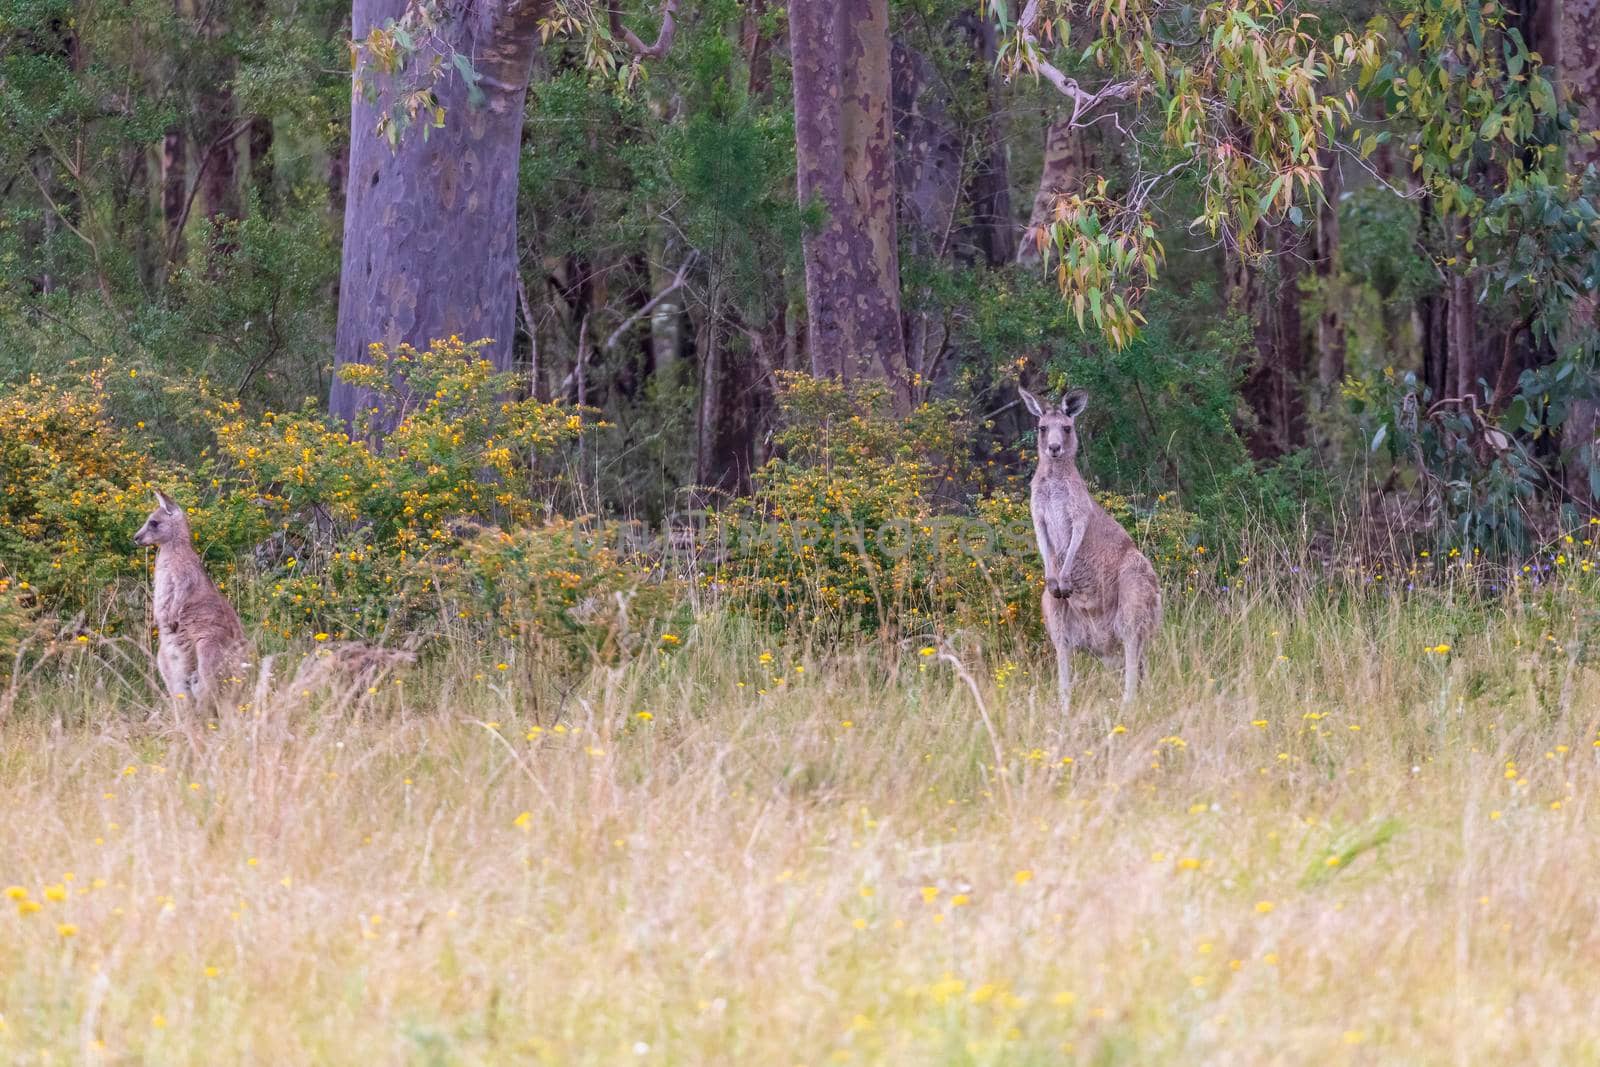 Australian Kangaroos grazing in a green field in regional Australia by WittkePhotos